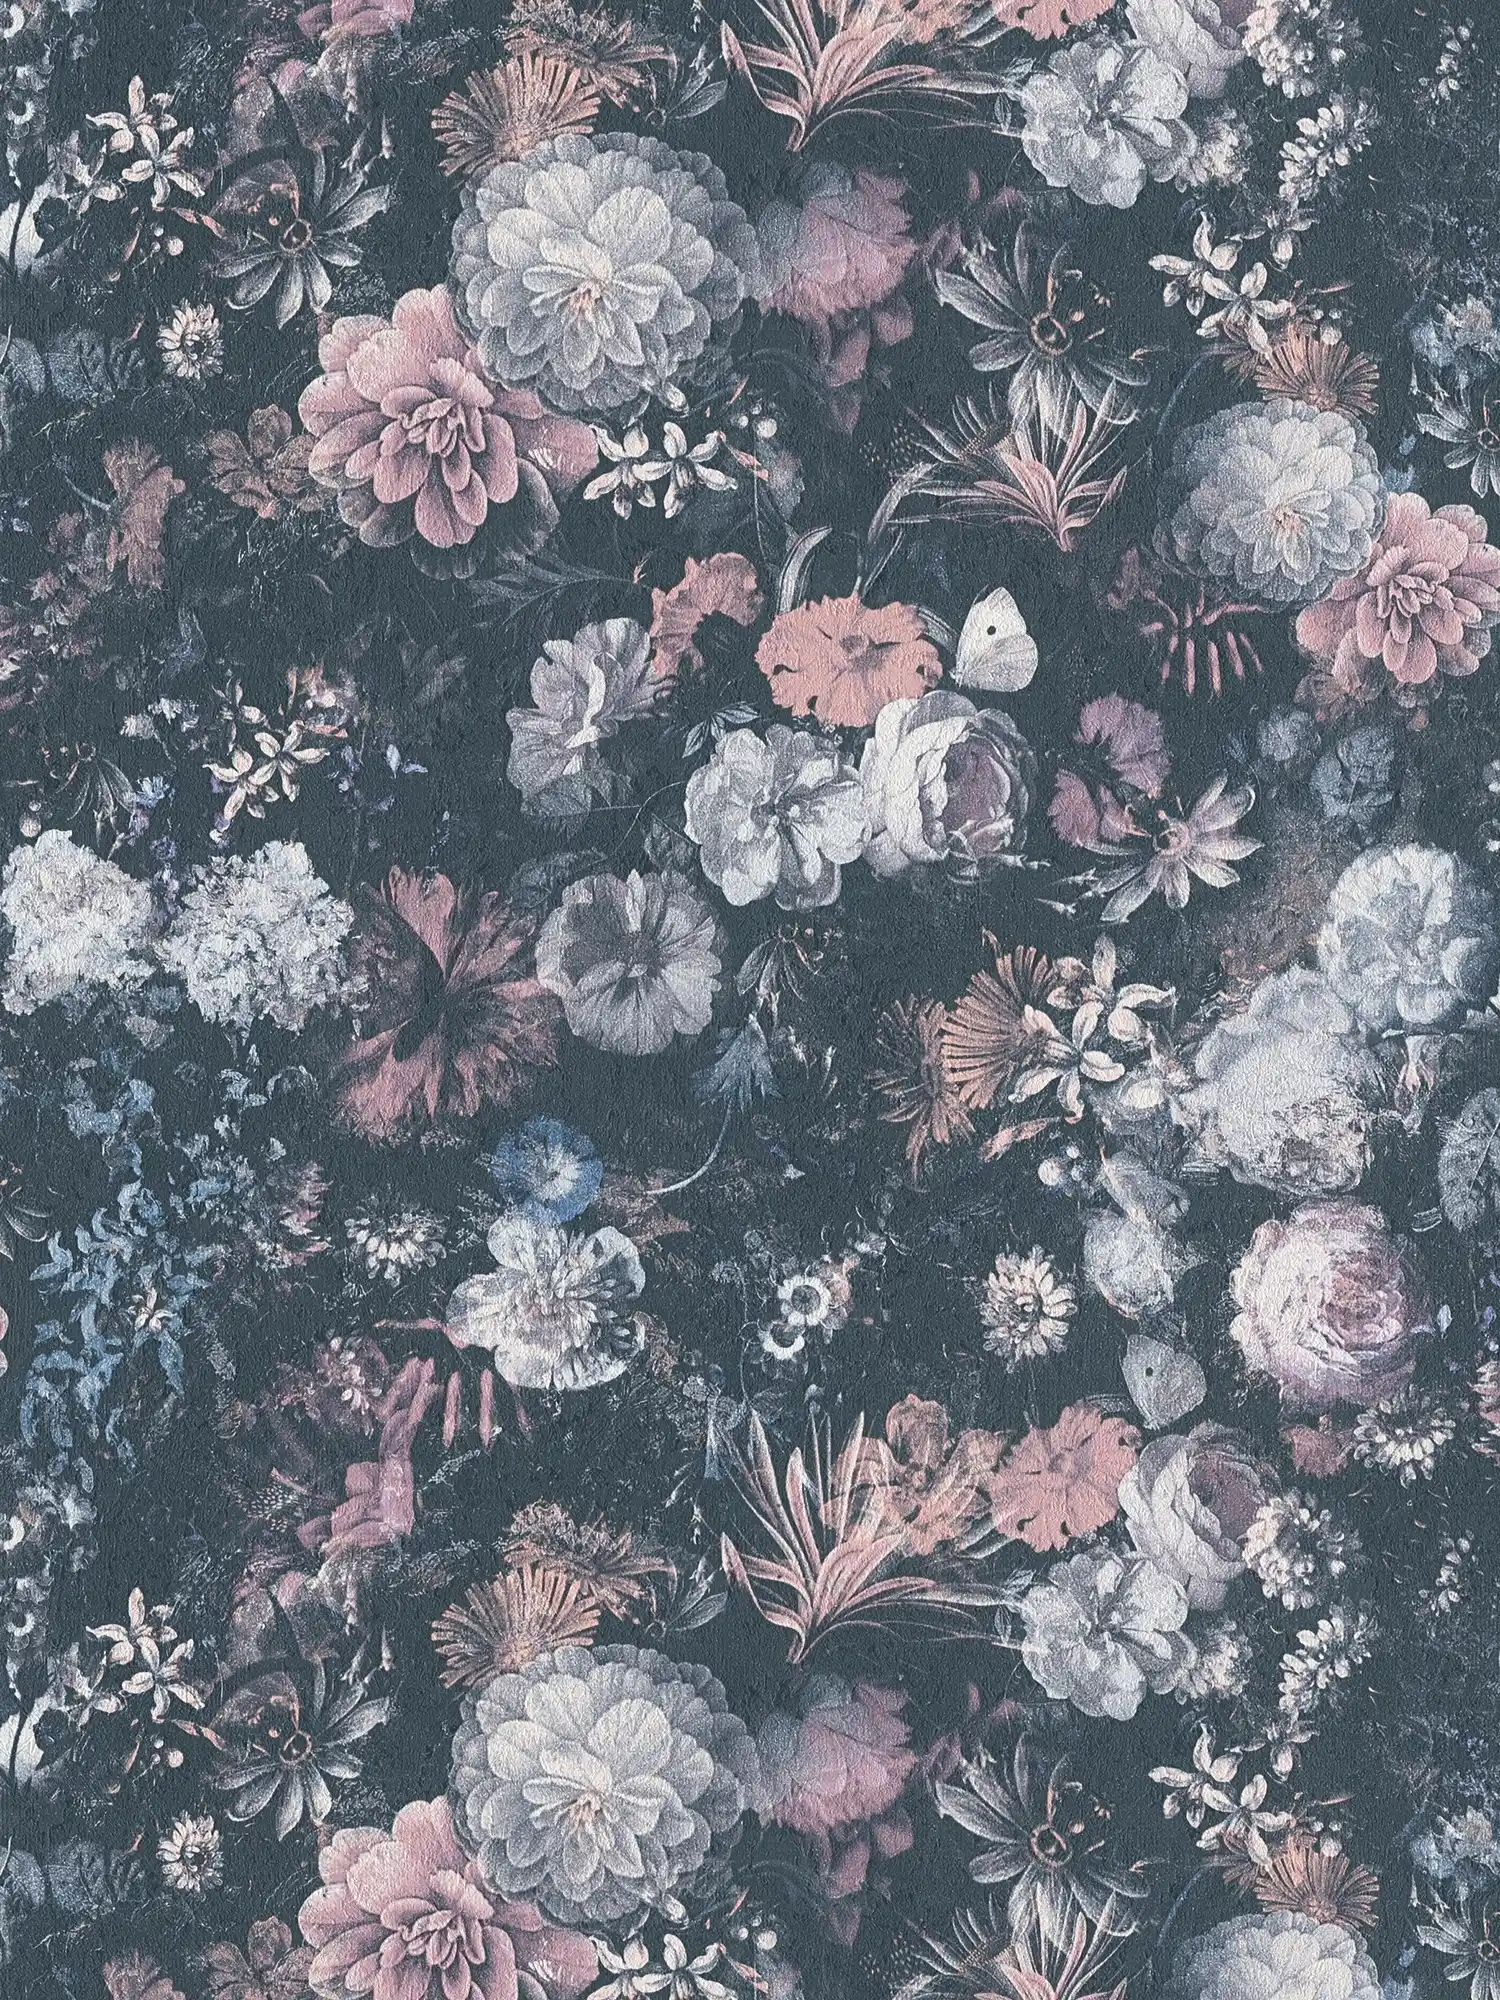         Blumentapete Rosen Gemälde mit Textureffekt – Grau, Rosa
    